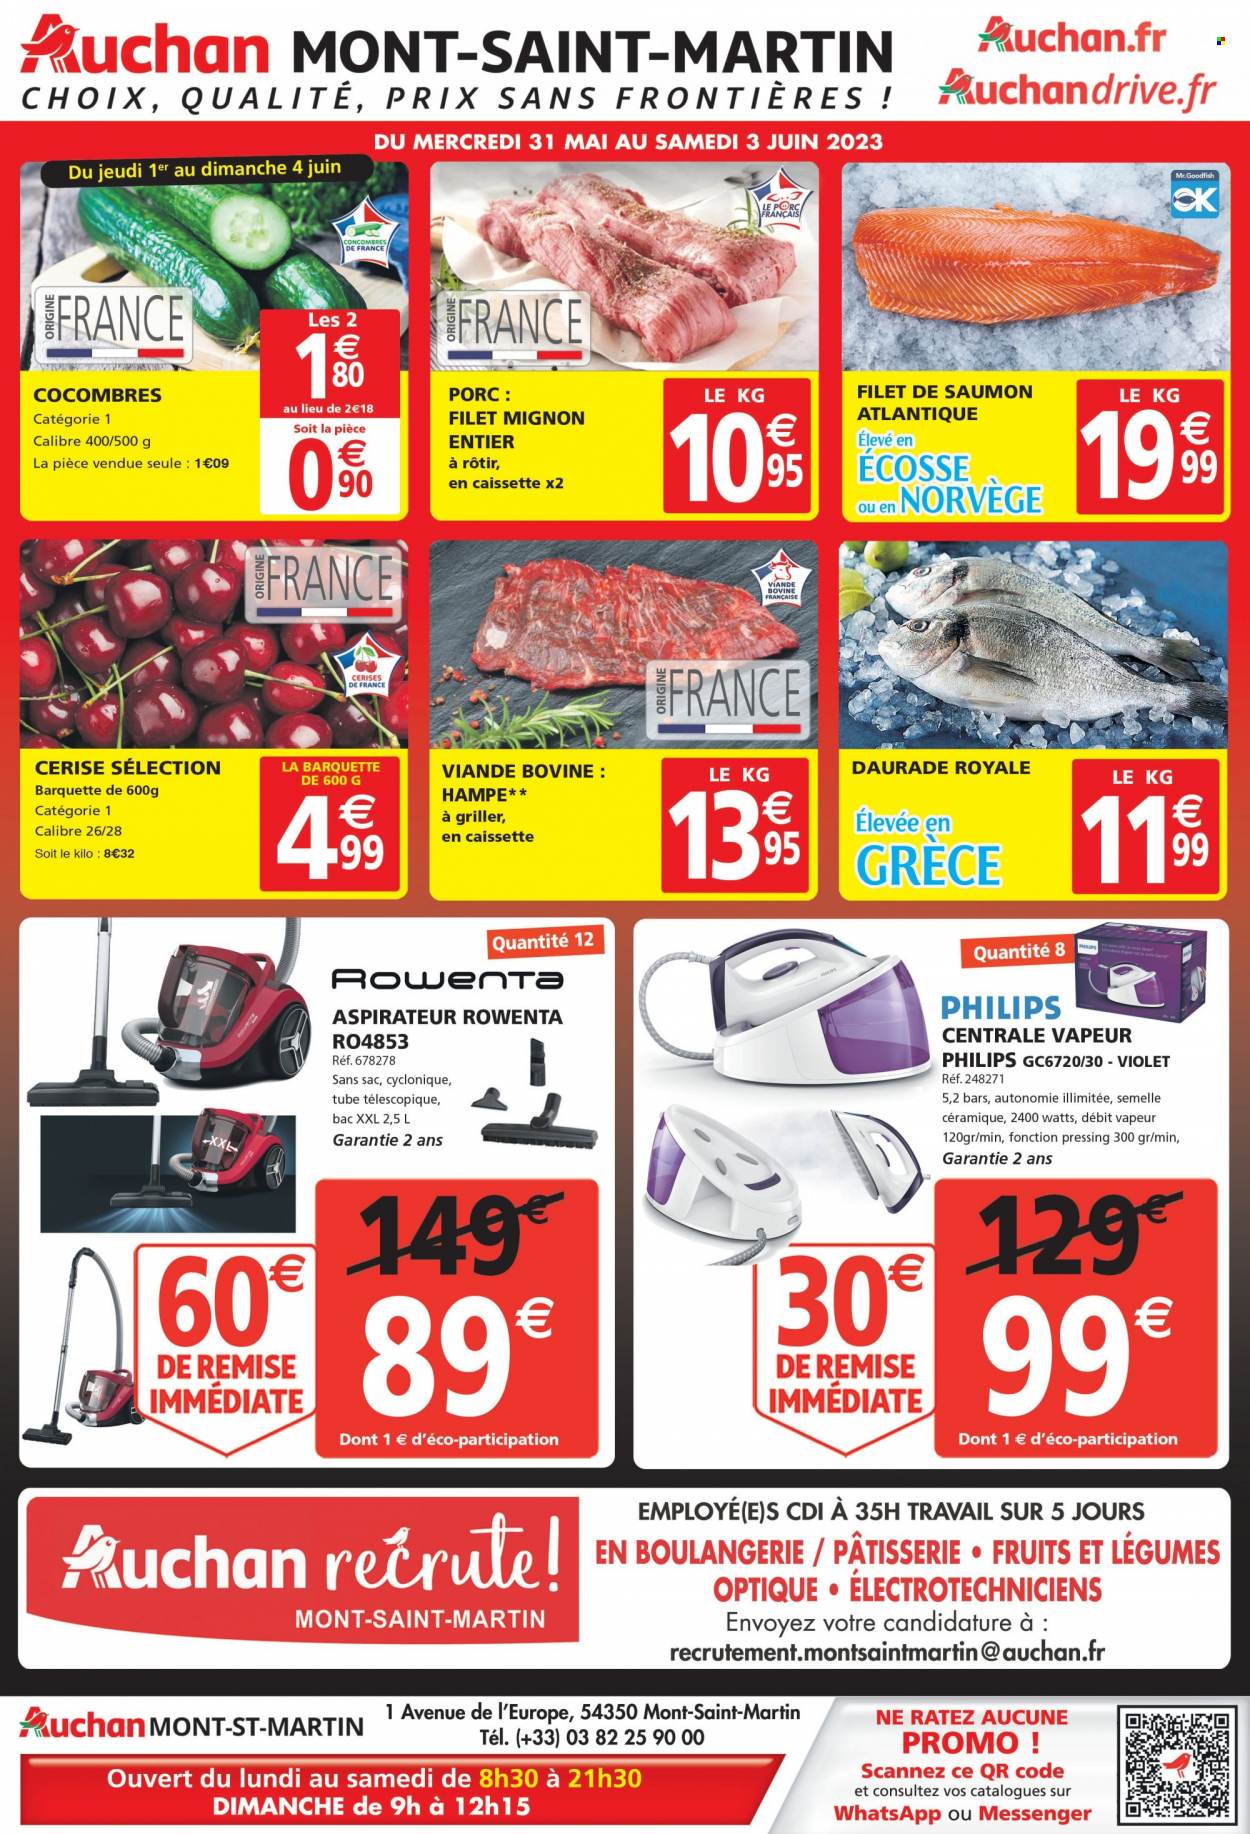 thumbnail - Catalogue Auchan - 31/05/2023 - 03/06/2023 - Produits soldés - filet mignon, viande, Philips, cerises, concombre, saumon, dorade, pavés de saumon, aspirateur, Rowenta, centrale vapeur. Page 1.